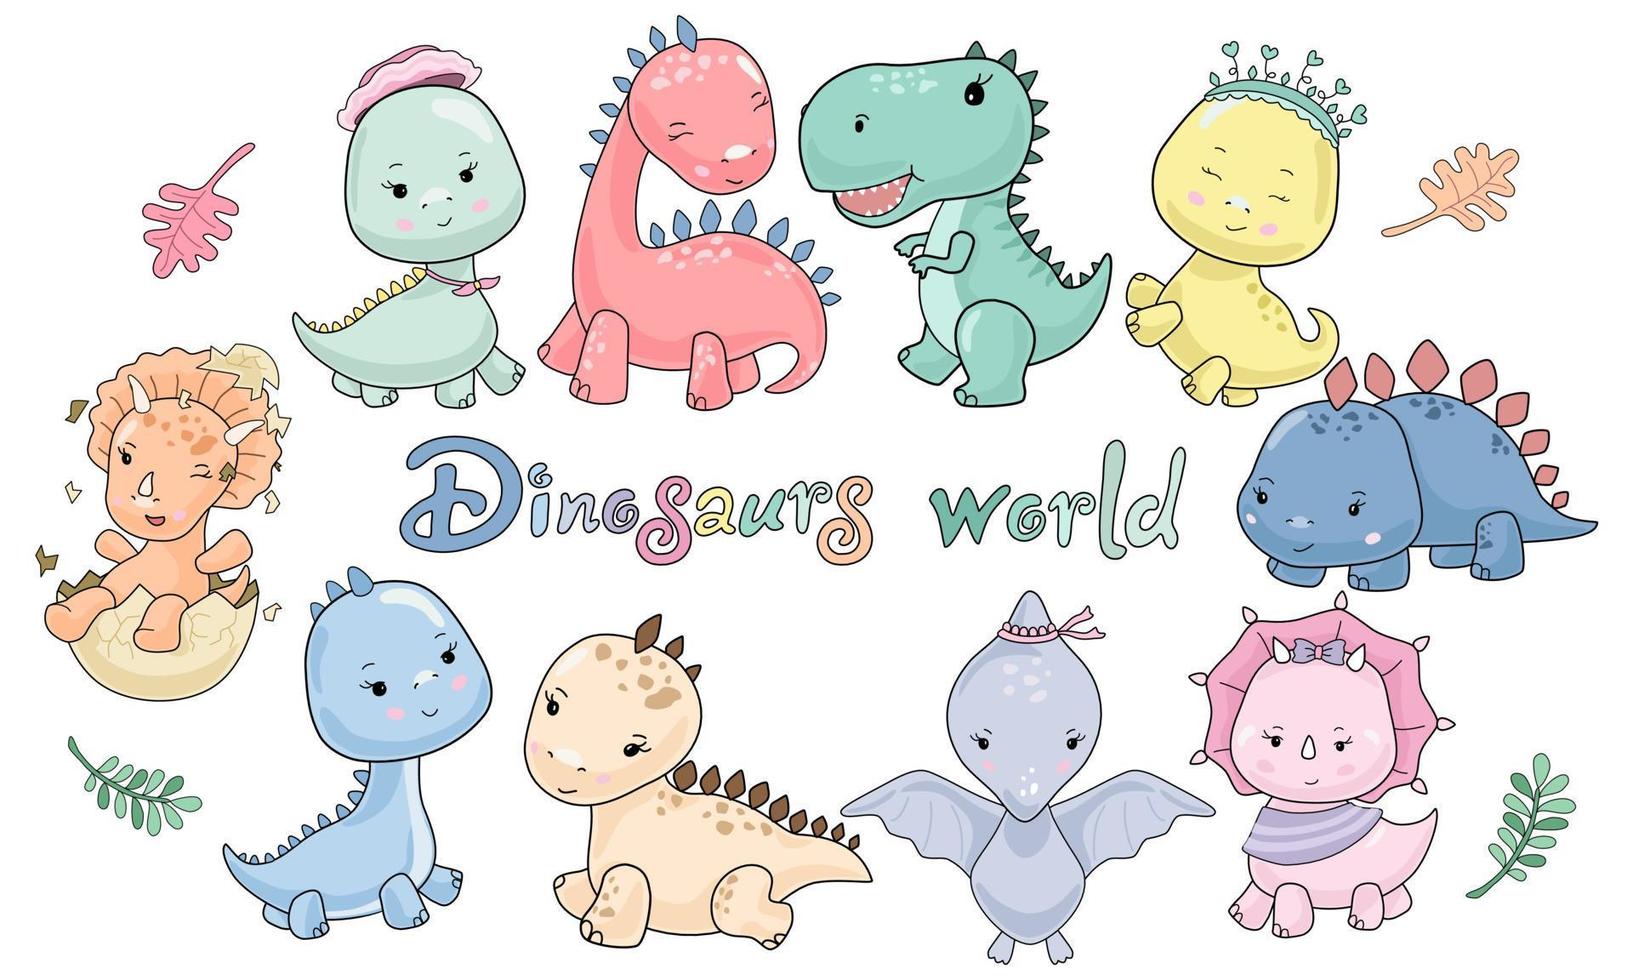 mundo de personagens de dinossauros fofos projetados em estilo pastel doodle vetor